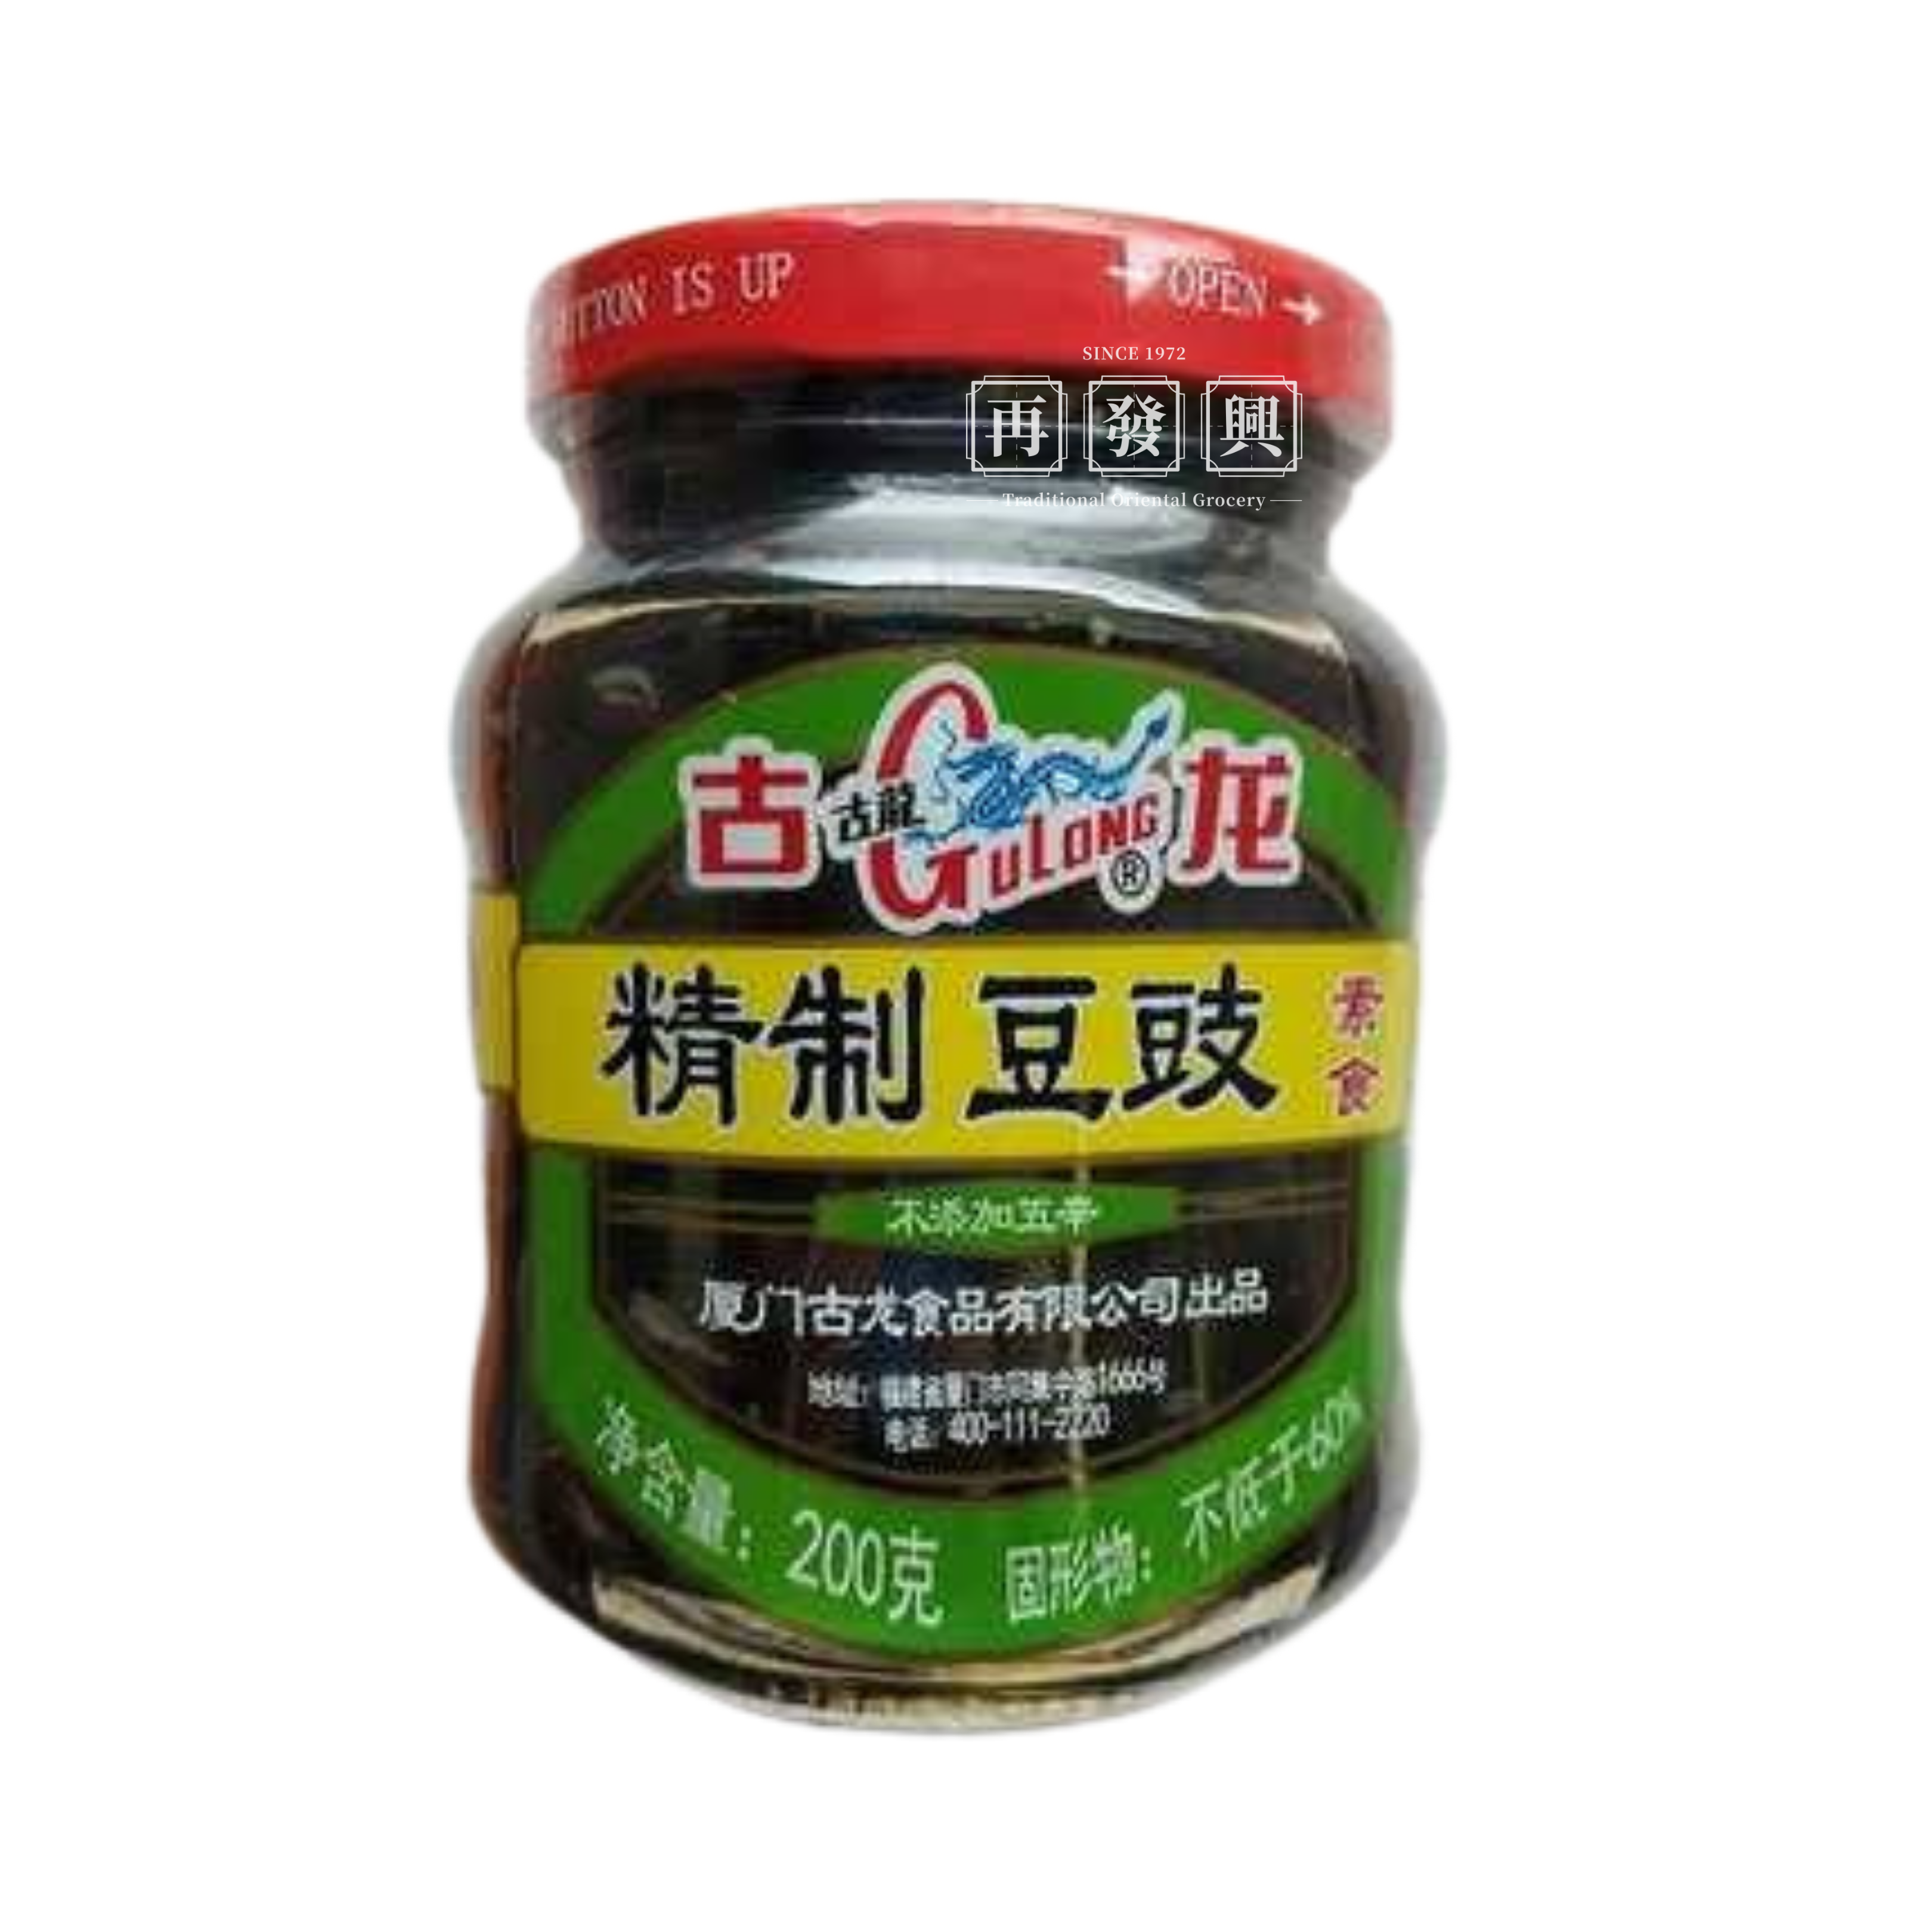 GuLong Salted Black Beans 200g